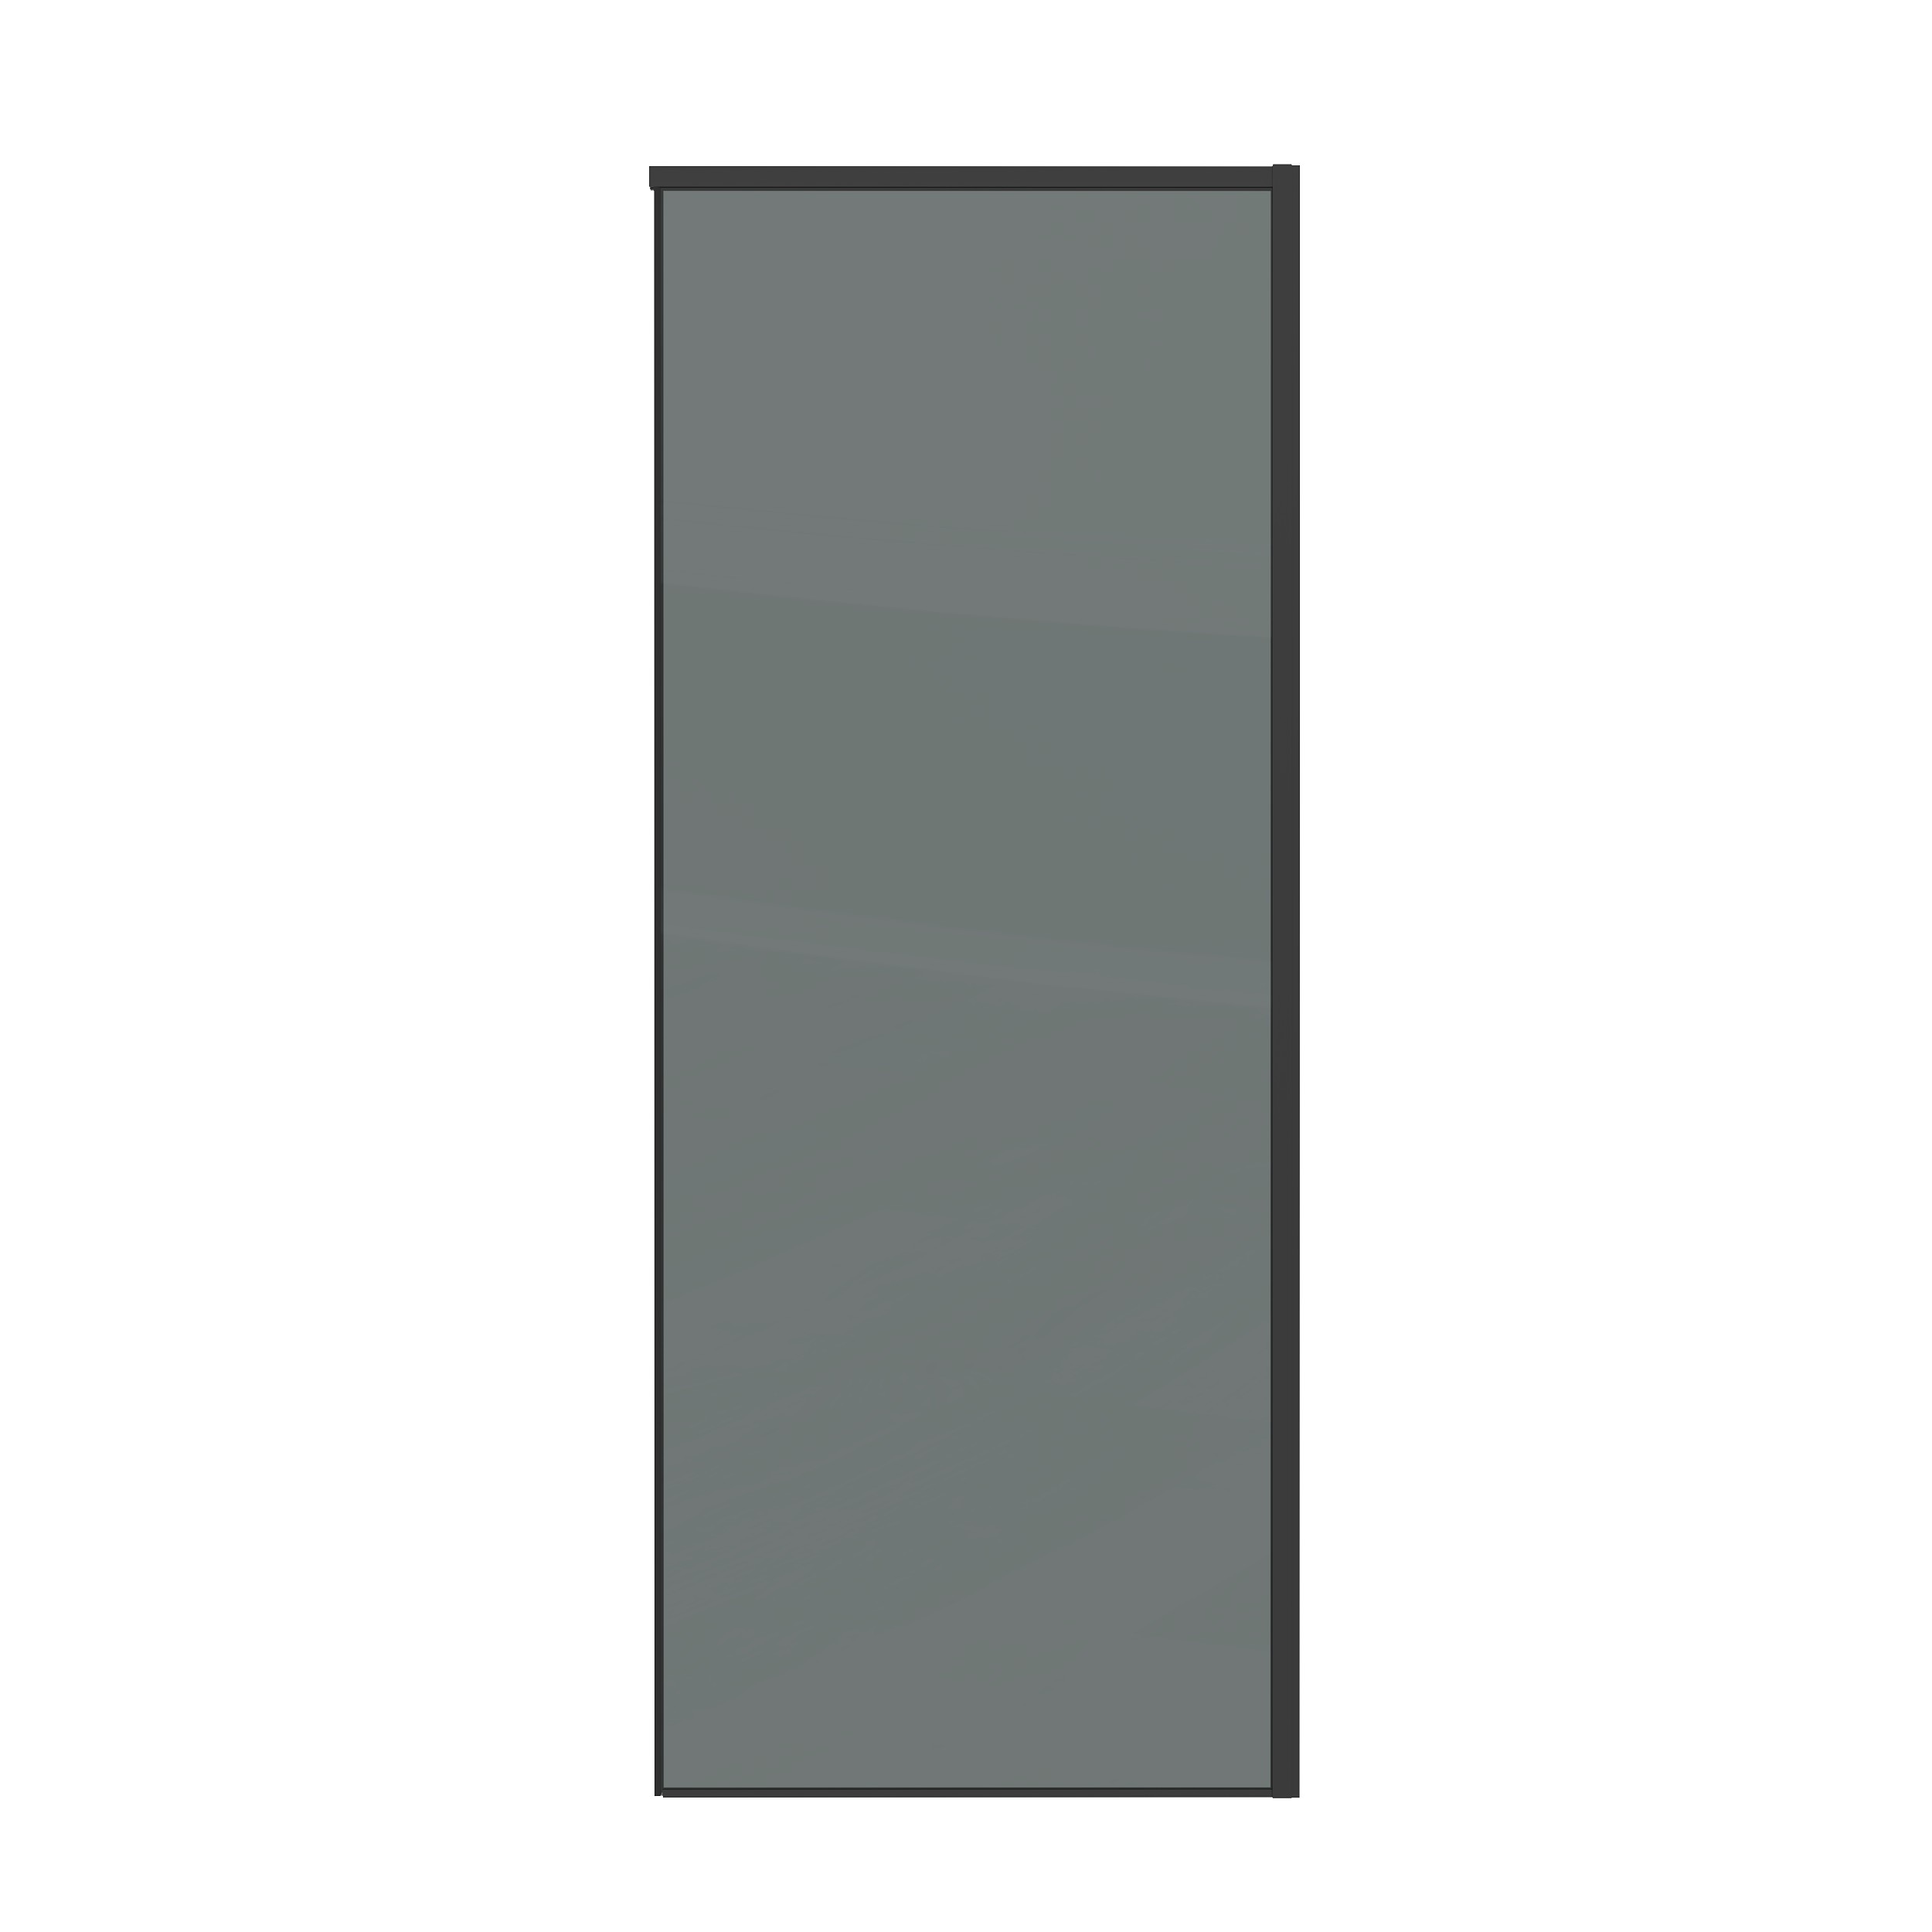 Боковая стенка Grossman Galaxy 80x195 200.K33.01.80.21.10 стекло тонированное, профиль черный матовый